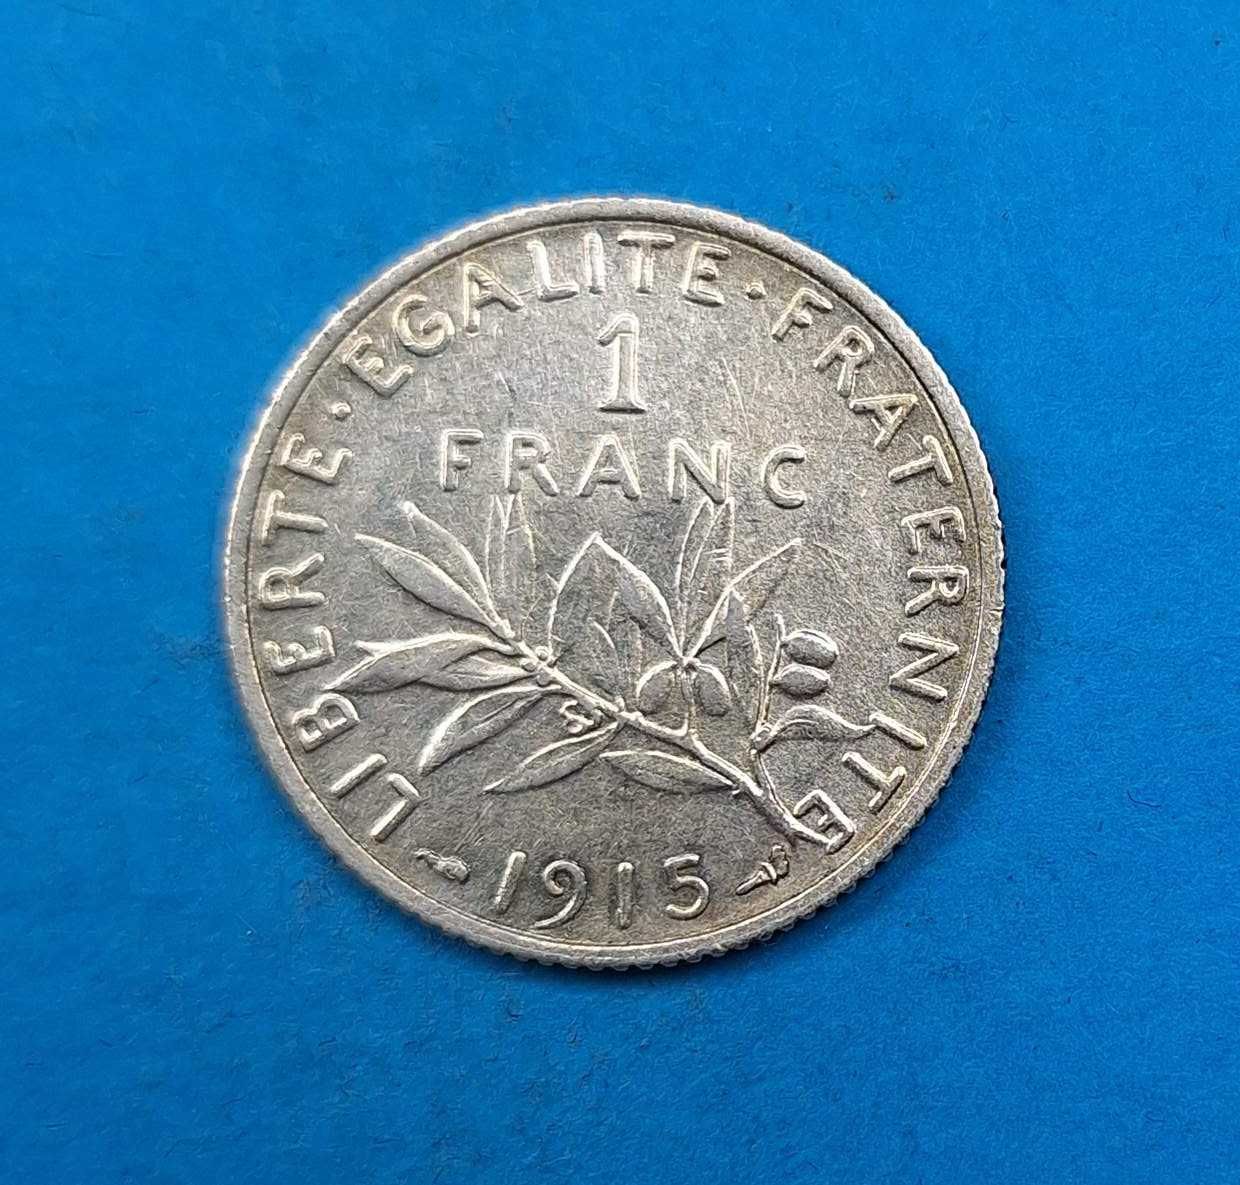 Francja 1 frank rok 1915, bardzo dobry stan, srebro 0,835